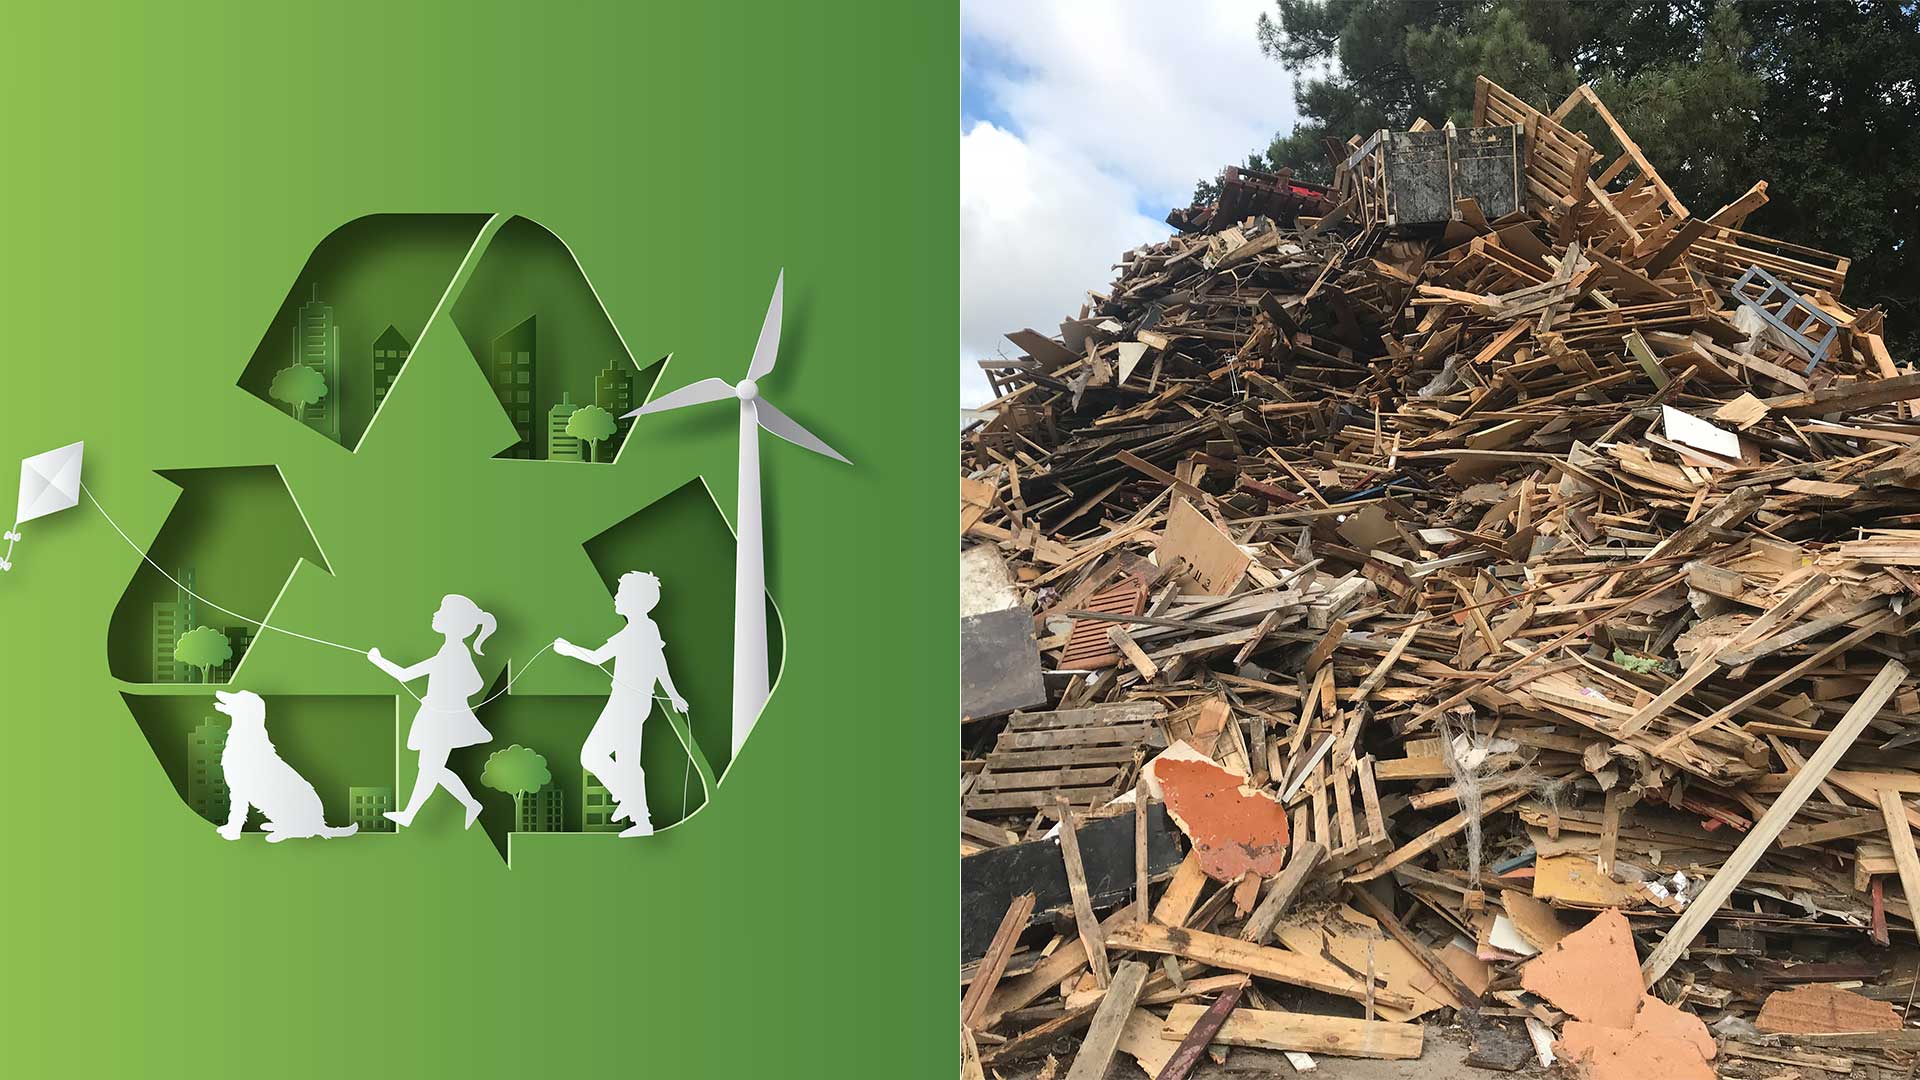 Logo recyclage à gauche, déchets bois à droite